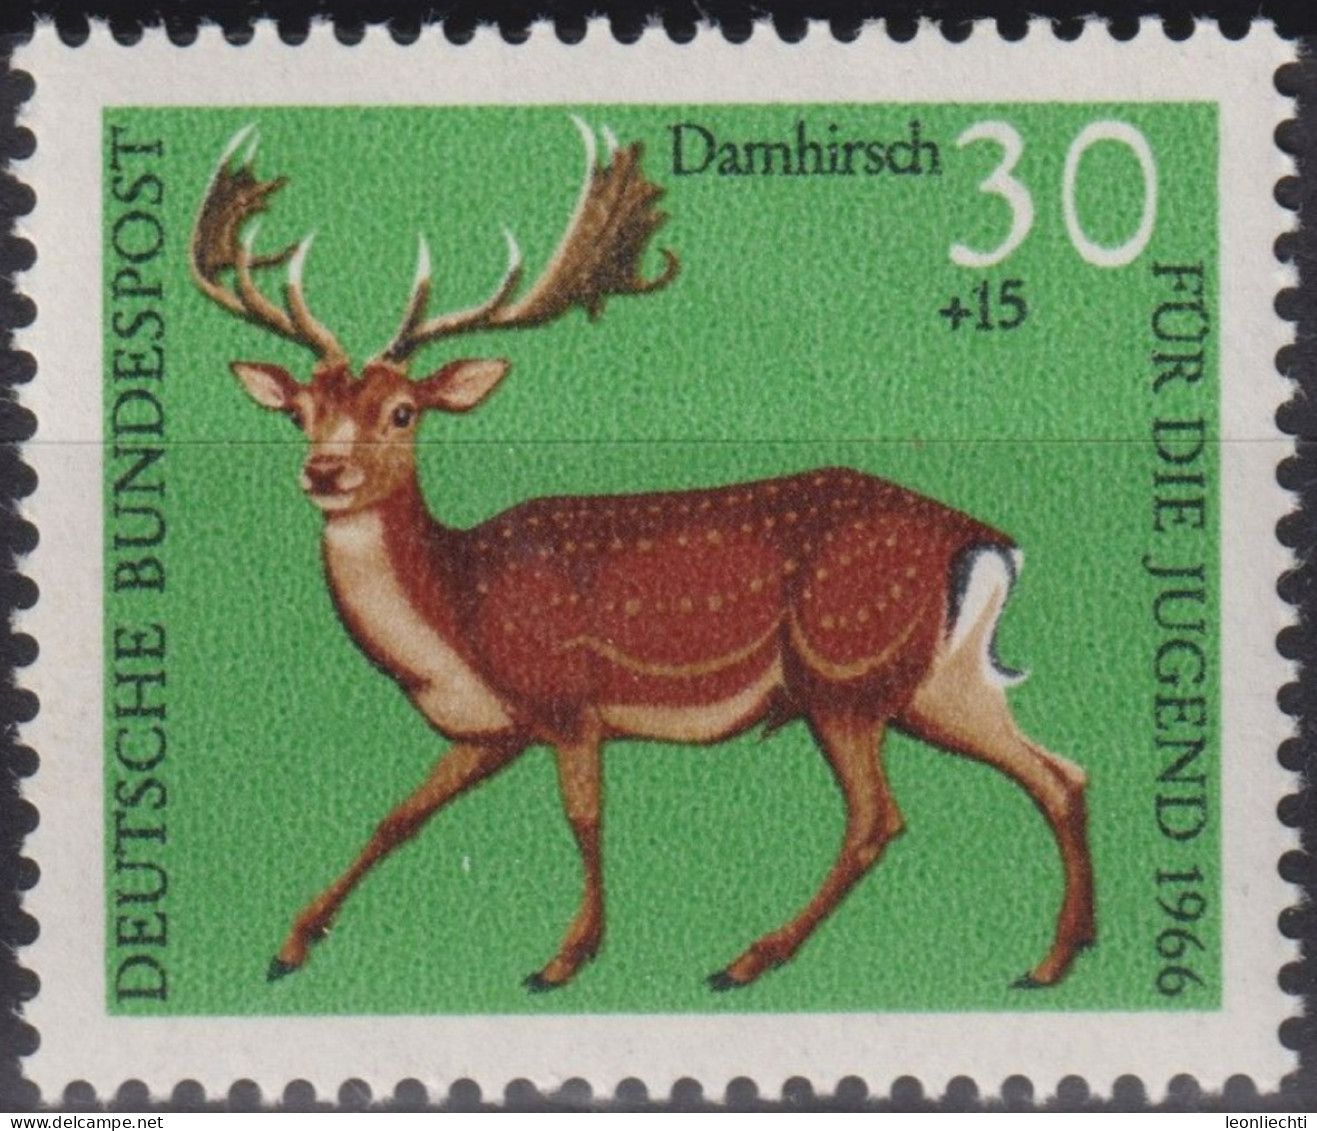 1966 Deutschland > BRD, ** Mi:DE 513, Sn:DE B414, Yt:DE 366, Damhirsch, Waldtiere - Wild